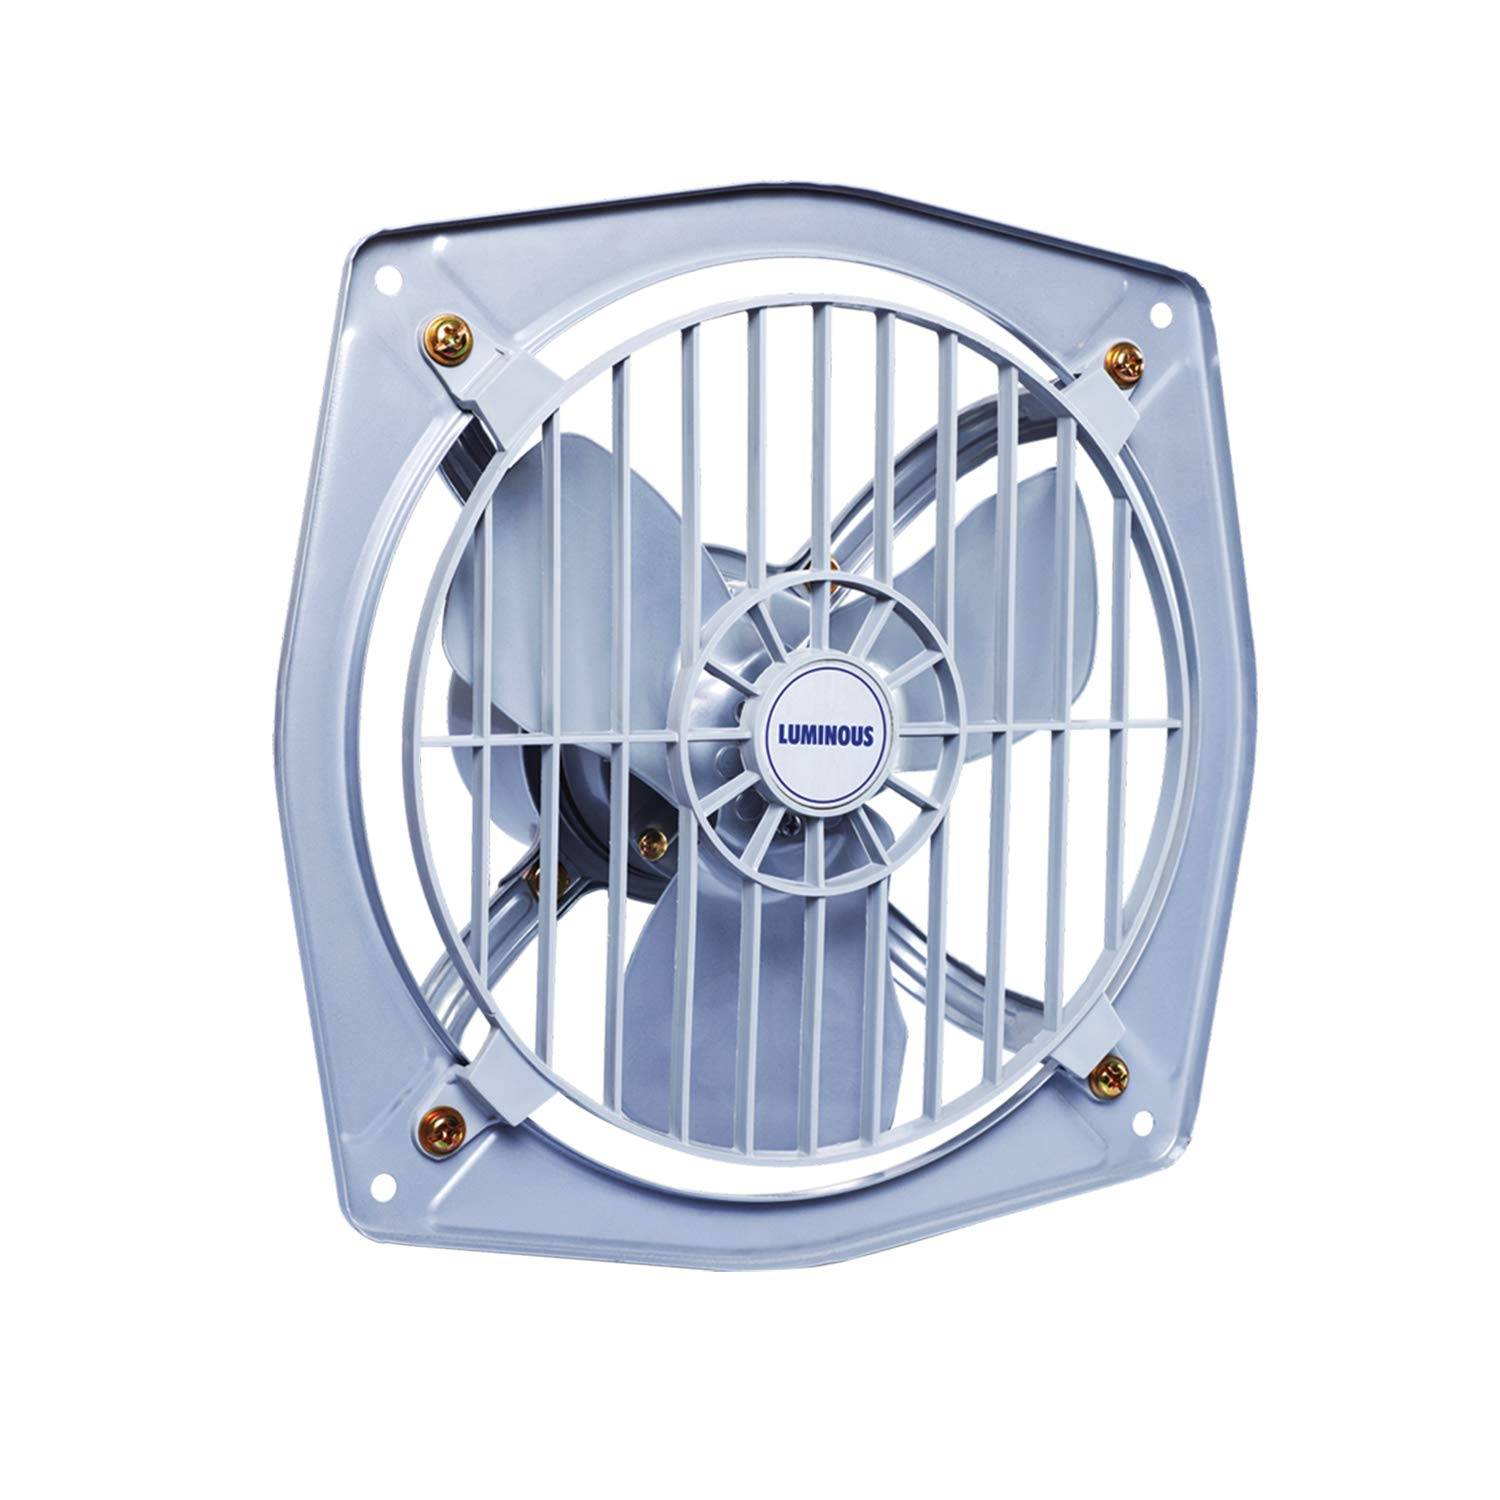 Buy Luminous 230mm Exhaust Fan Vento Matel Body Exhaust Fan Online From